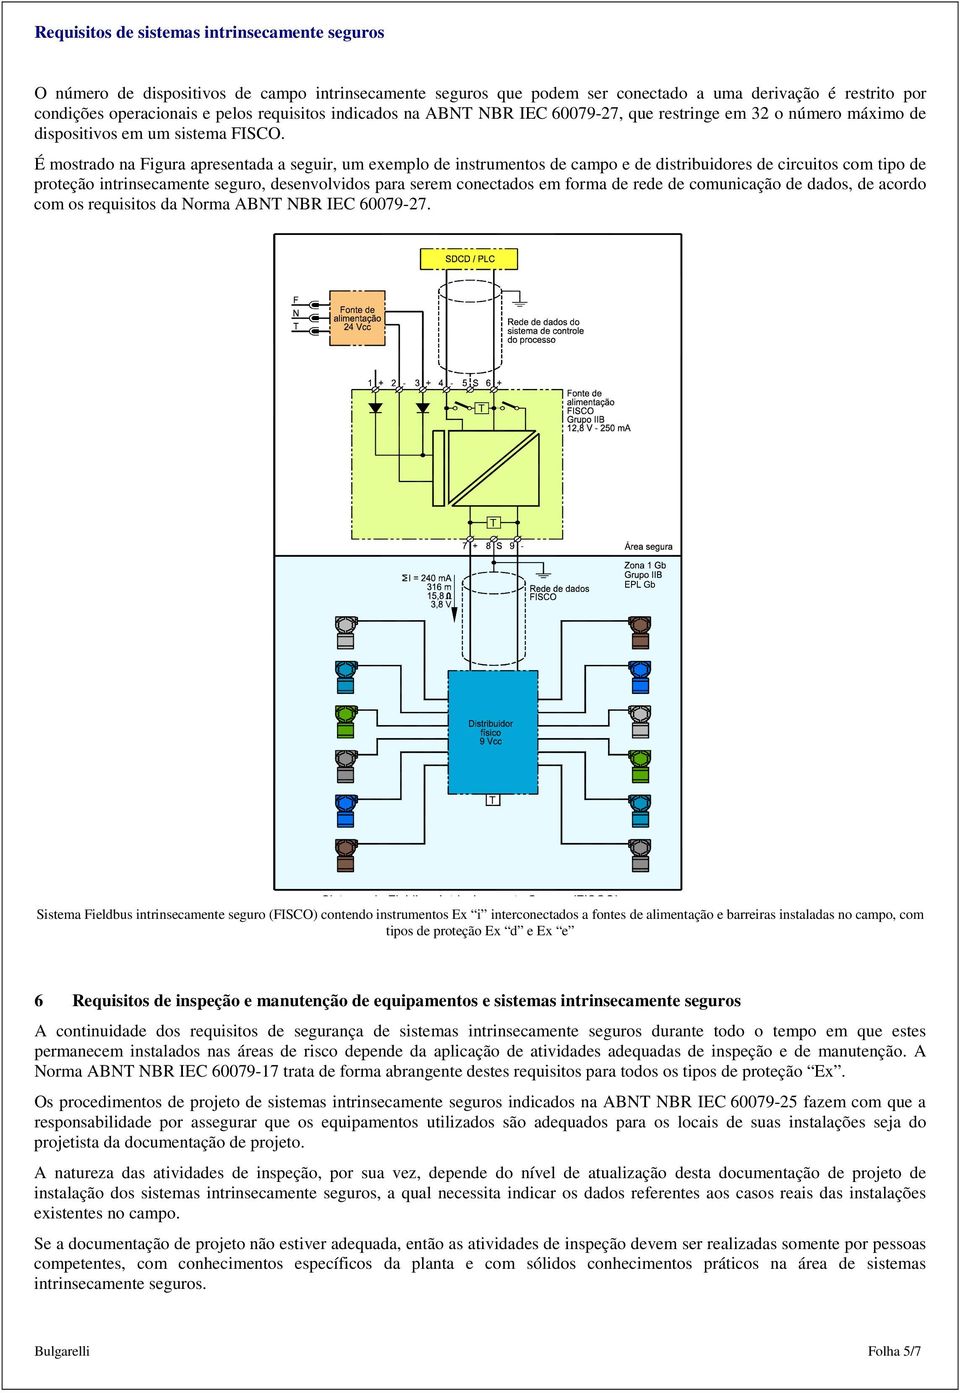 É mostrado na Figura apresentada a seguir, um exemplo de instrumentos de campo e de distribuidores de circuitos com tipo de proteção intrinsecamente seguro, desenvolvidos para serem conectados em